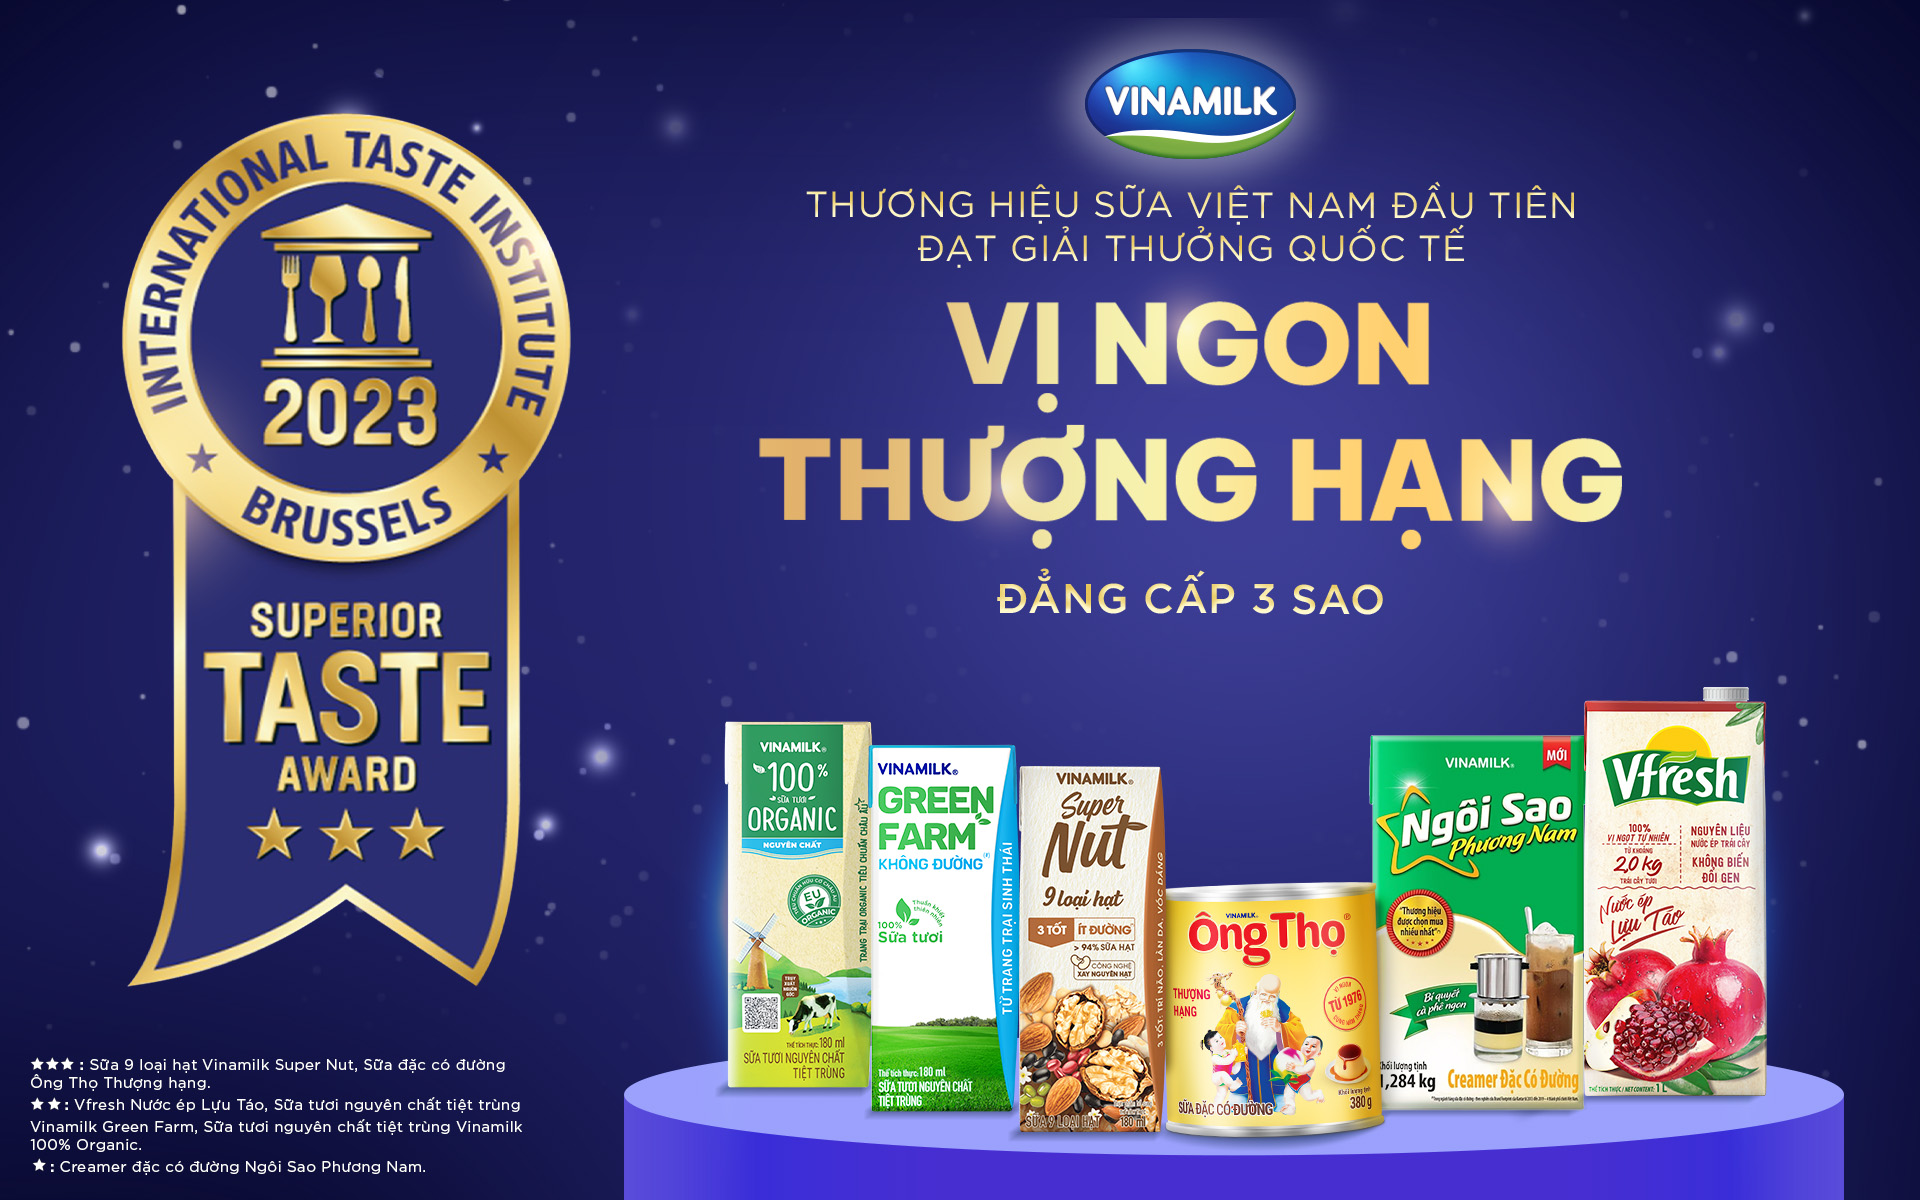 Lần đầu tiên Việt Nam có sản phẩm sữa đạt giải cao nhất về vị ngon tại giải thưởng Superior Taste Award - Ảnh 4.